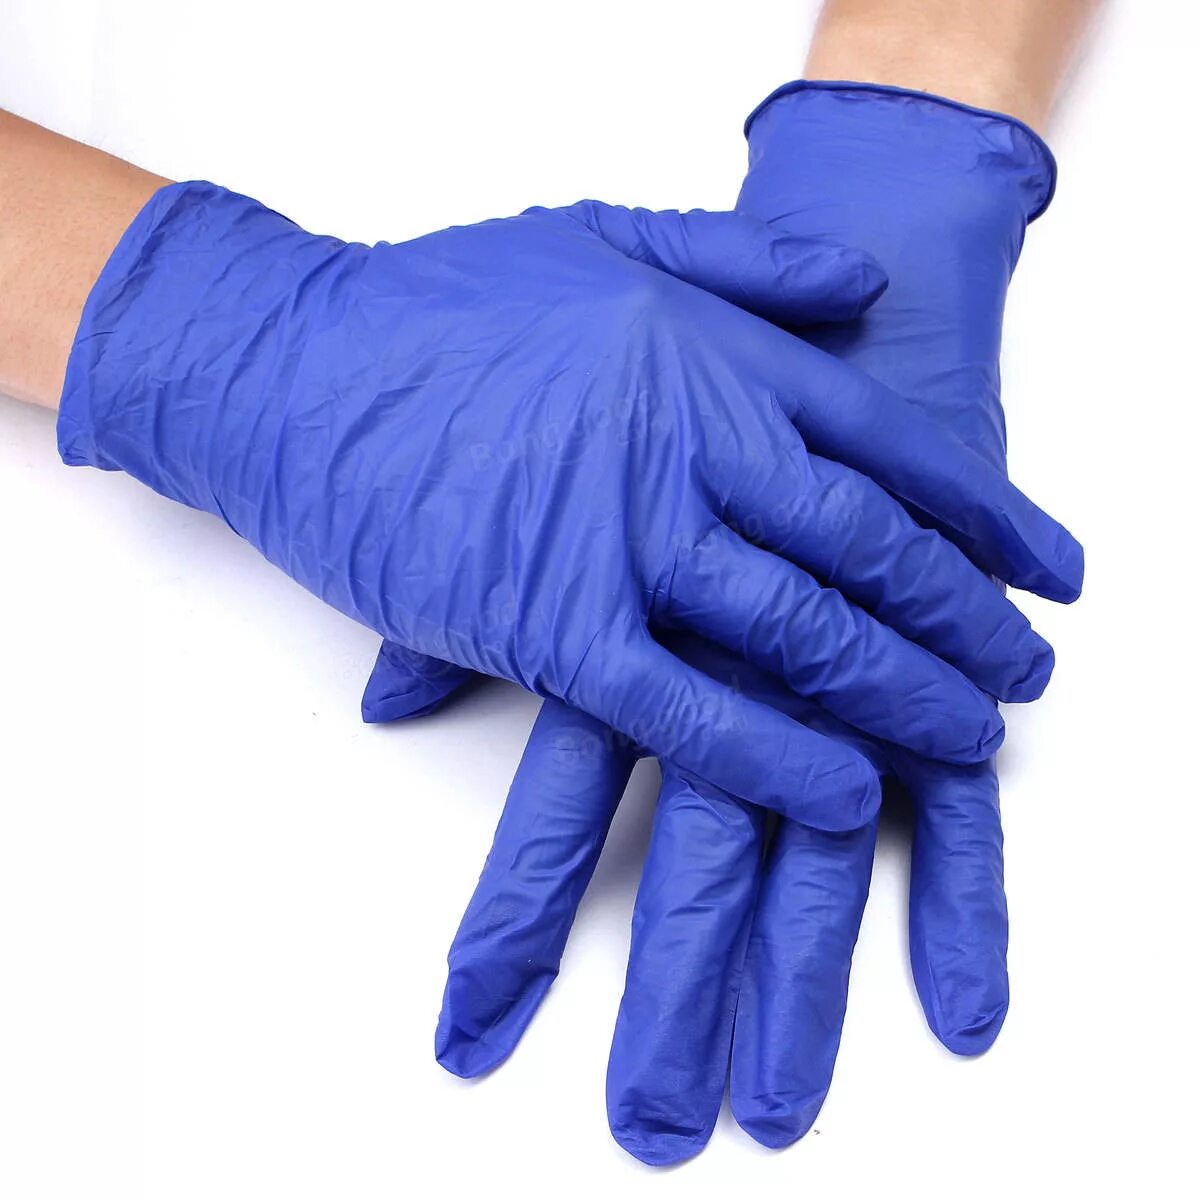 Перчатки нитриловые connect Blue Nitrile. Basic Medical перчатки латексные неопудренные. Nitrile Gloves перчатки. Перчатки нитриловые смотровые Disposable Gloves. Купить медицинские латексные перчатки